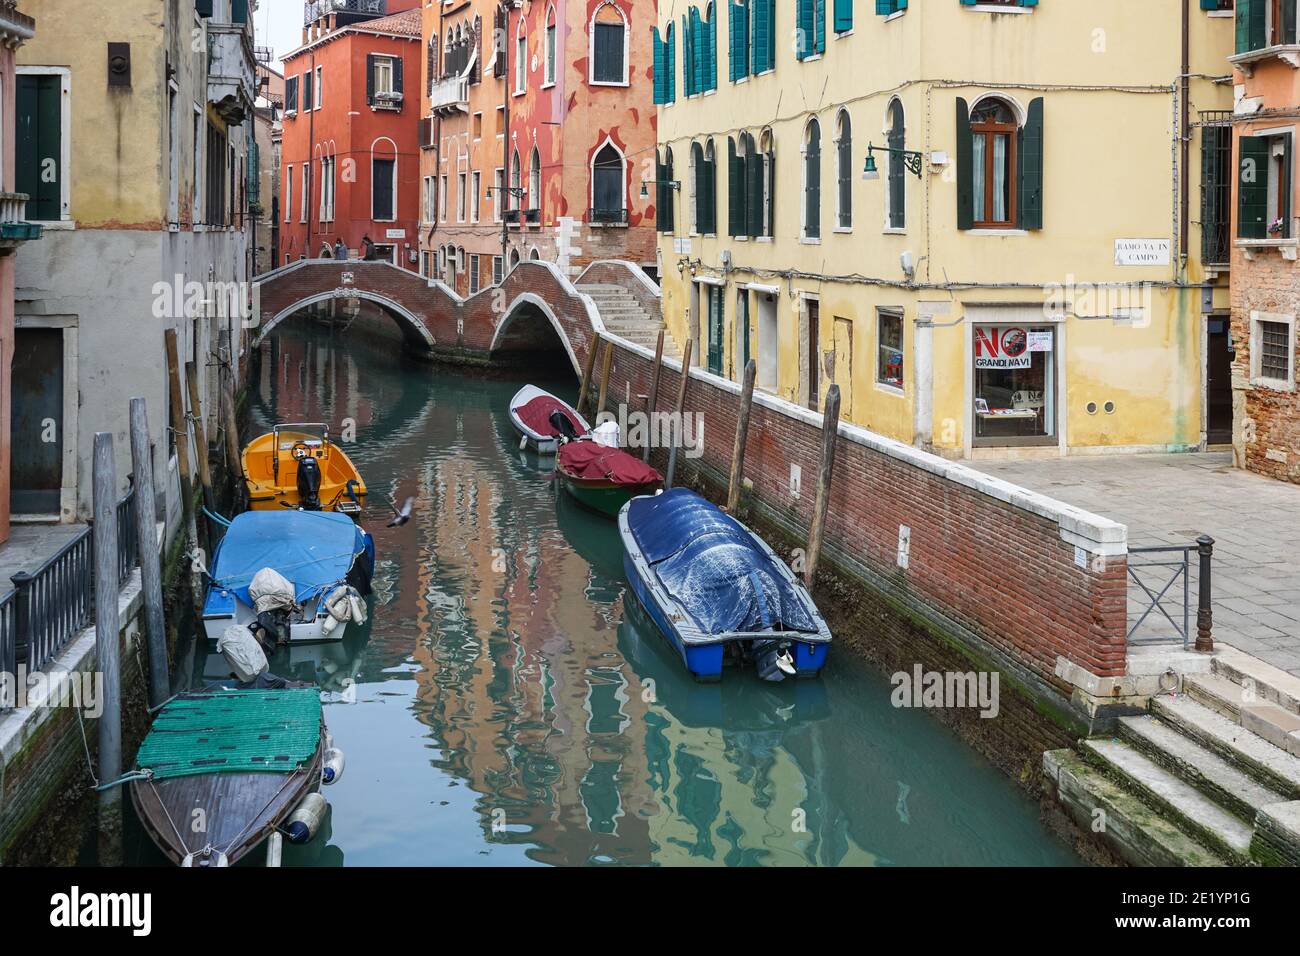 Turisti sul ponte del Paradiso sul canale Rio del mondo Novo nel sestiere di Castello, Venezia, Italia Foto Stock